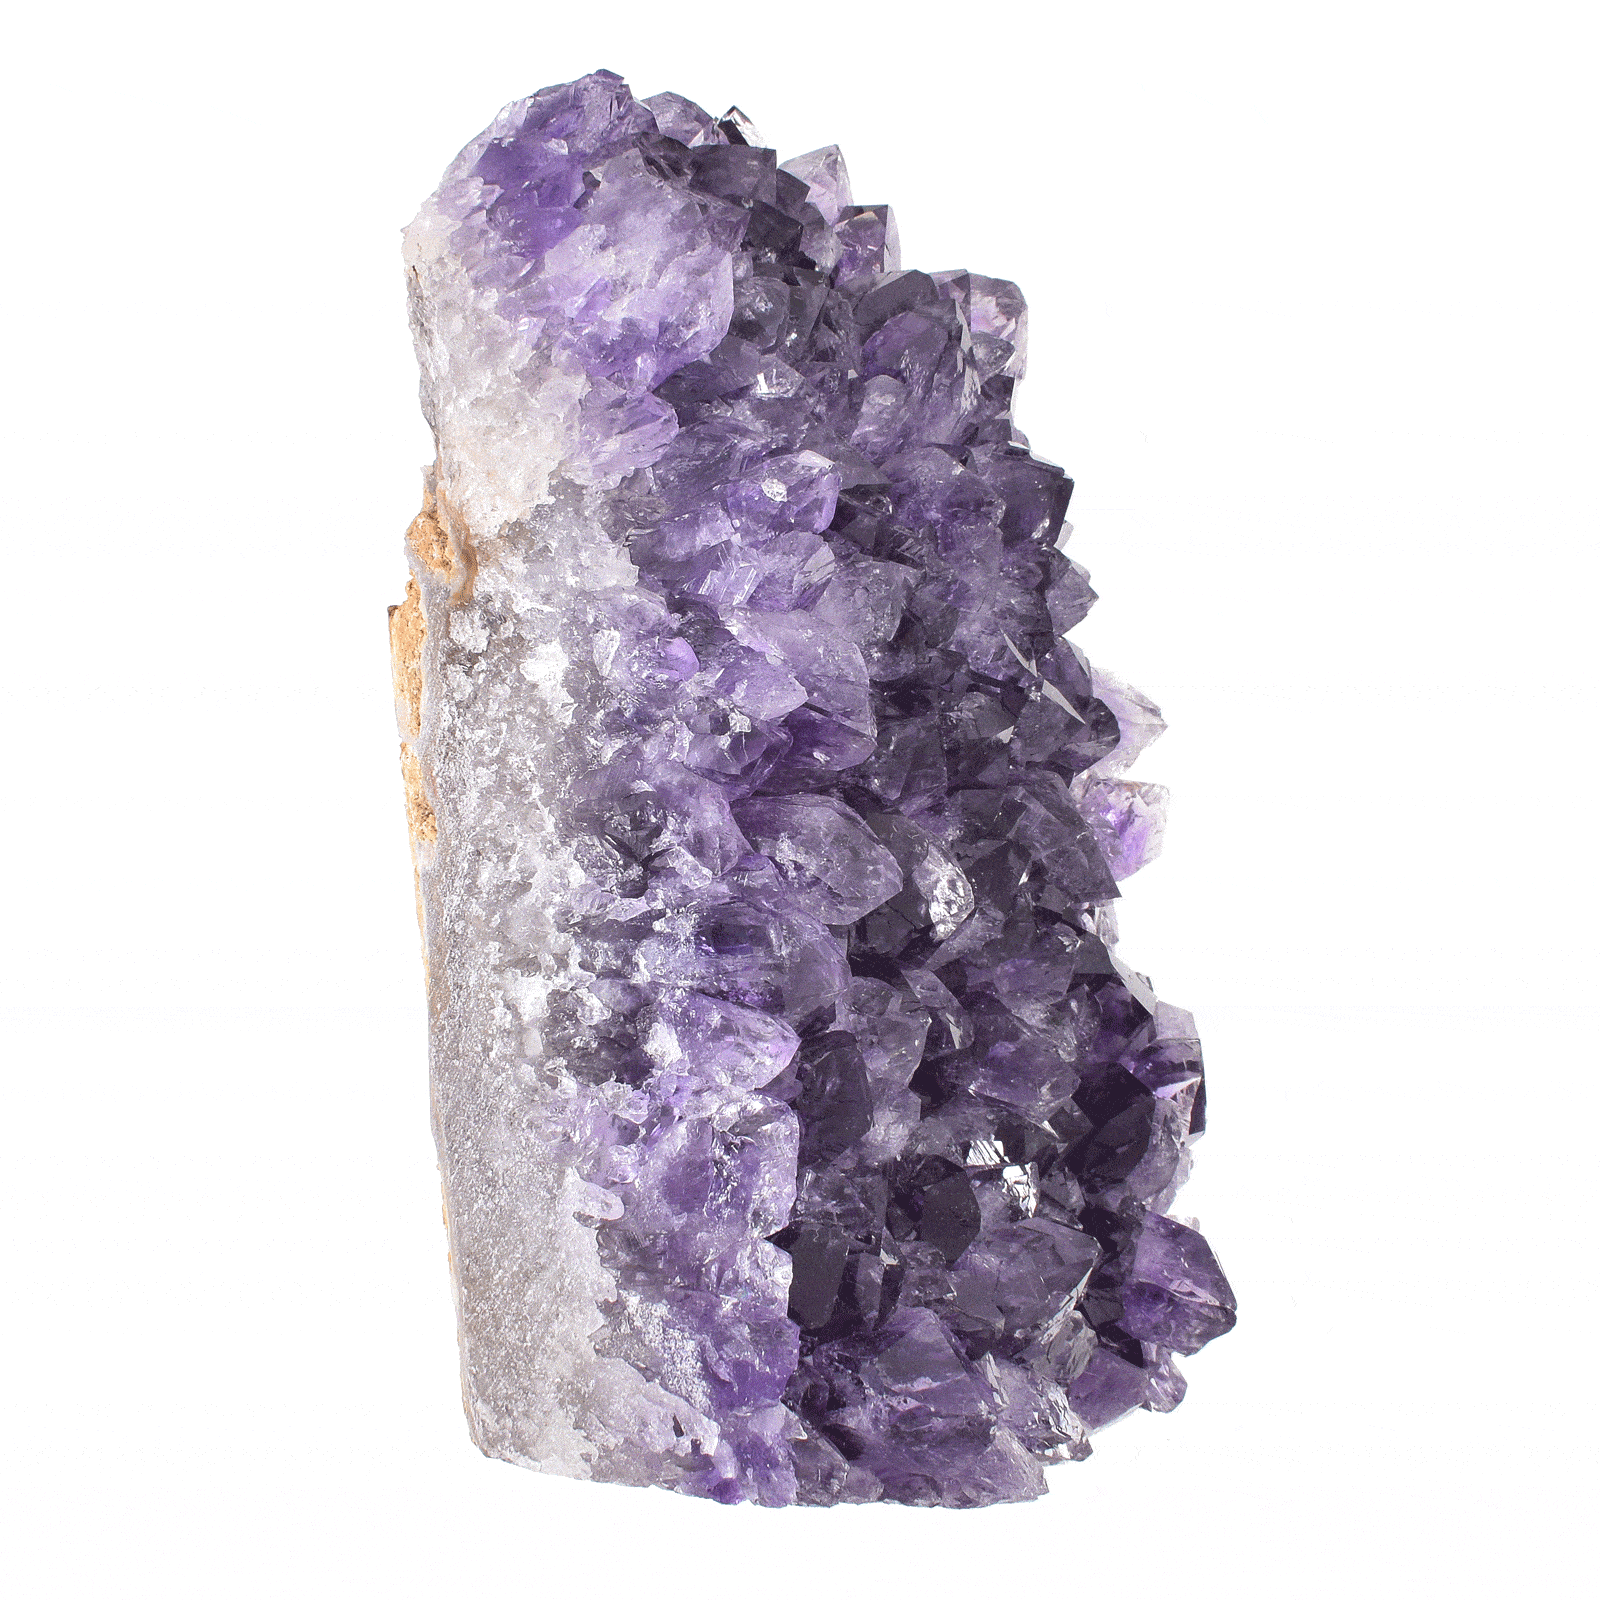 Ακατέργαστο κομμάτι φυσικής πέτρας Αμεθύστου, ύψους 14,5cm. Αγοράστε online shop.